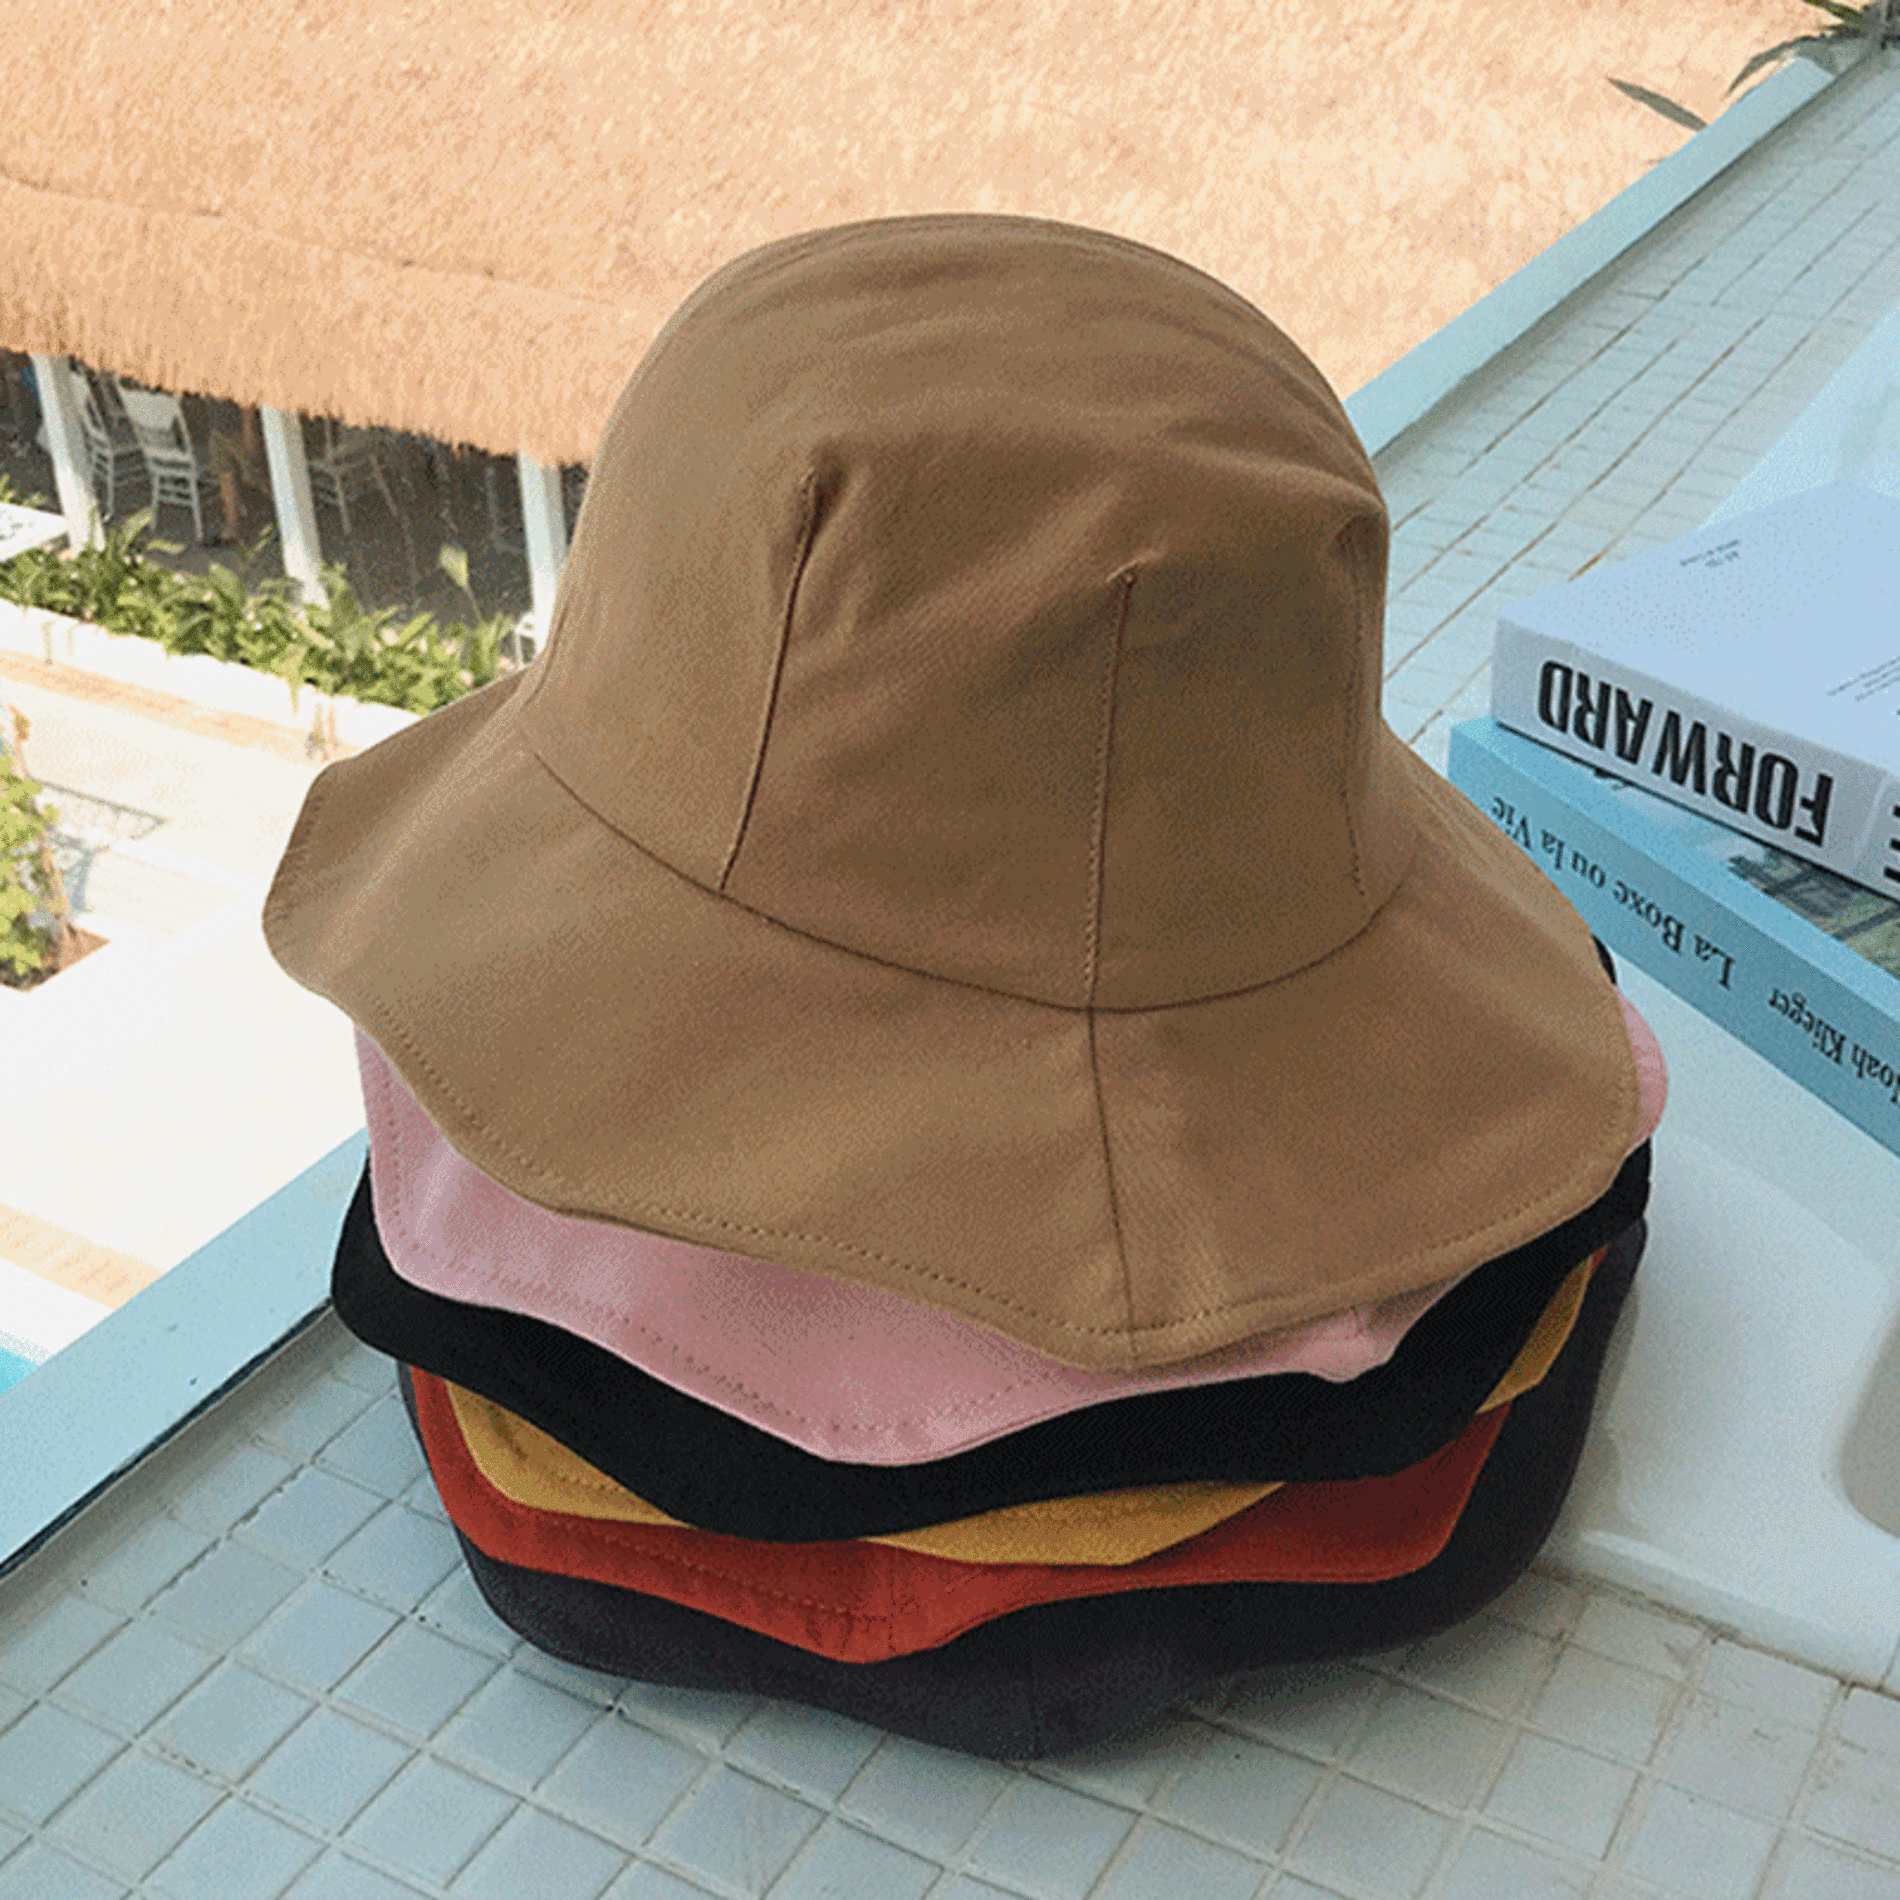 플라워 라인 벙거지 모자